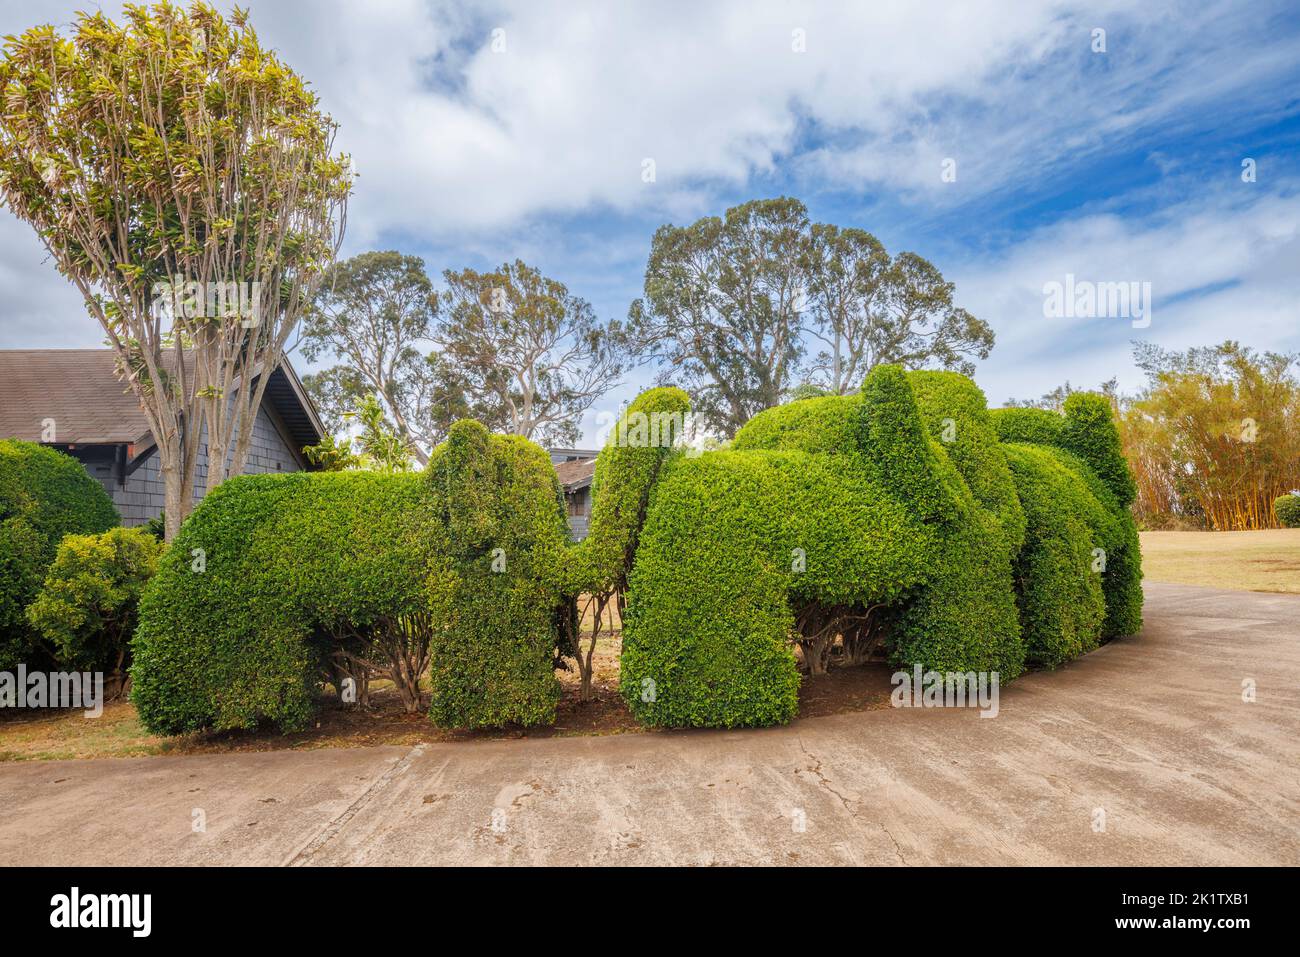 A decorative hedge in cut into the shape of elephants, Maui, Hawaii, USA. Stock Photo